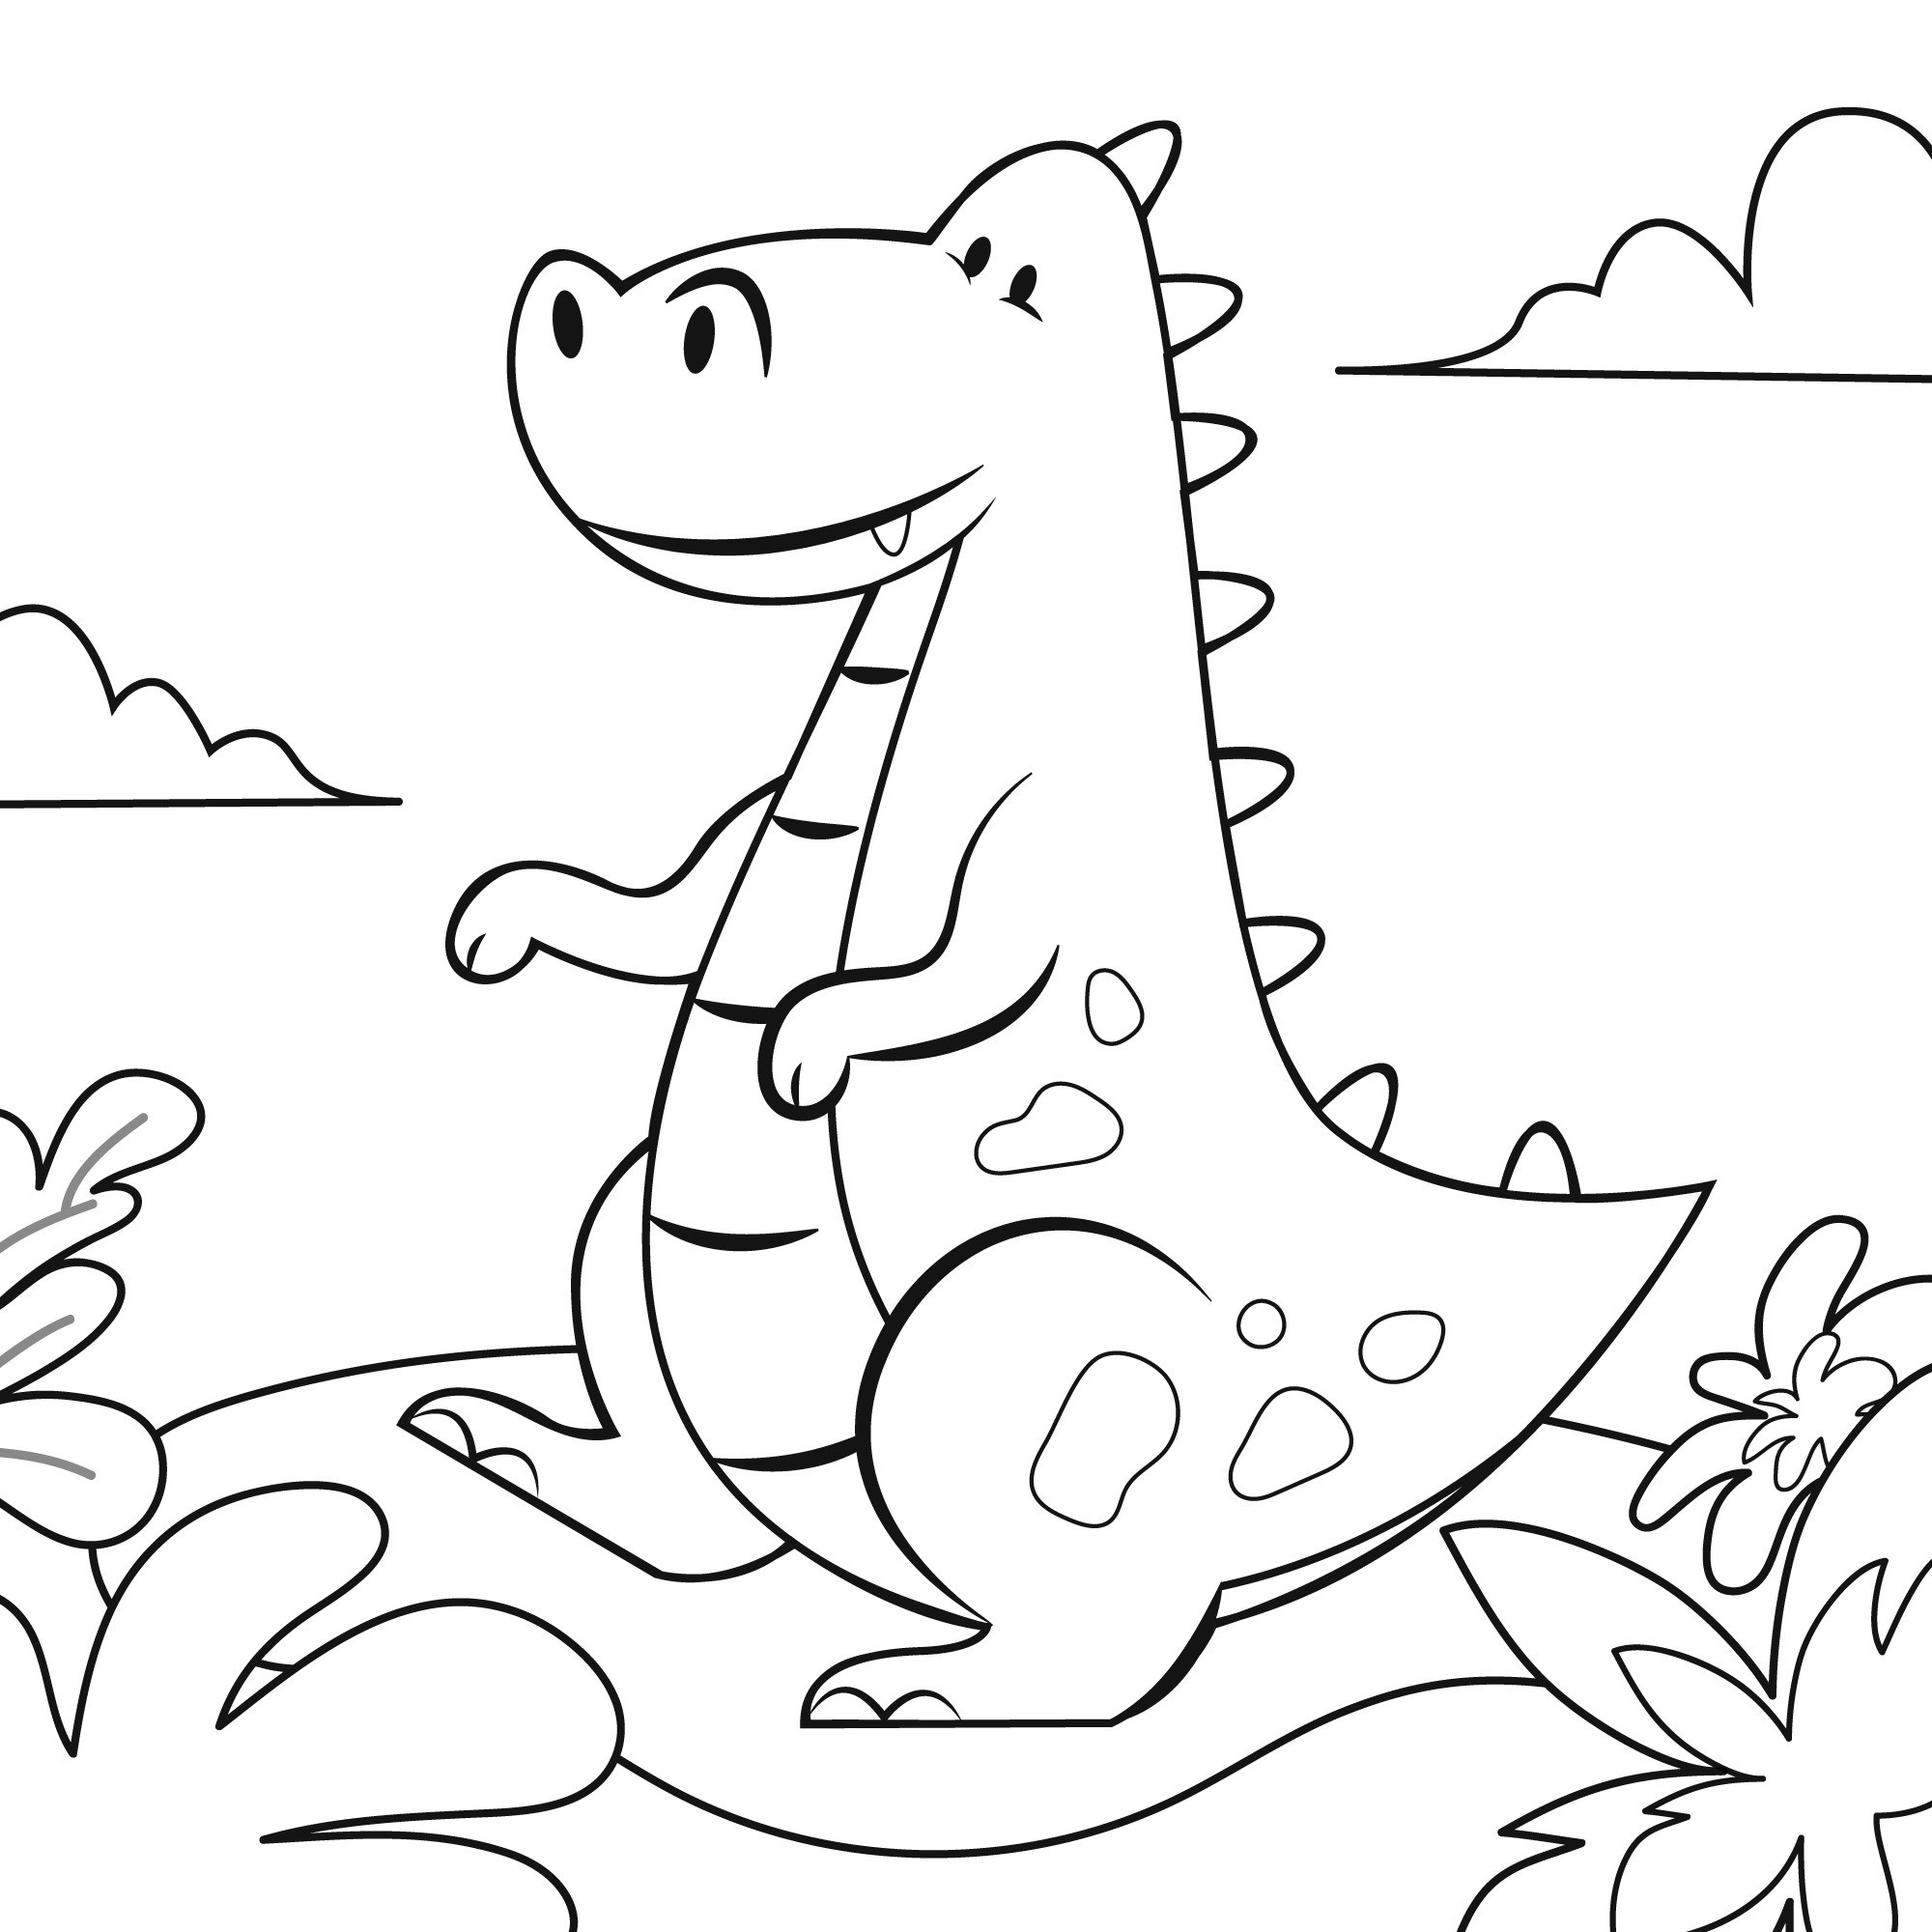 Раскраска для детей: динозавр Рекс сидит на поляне